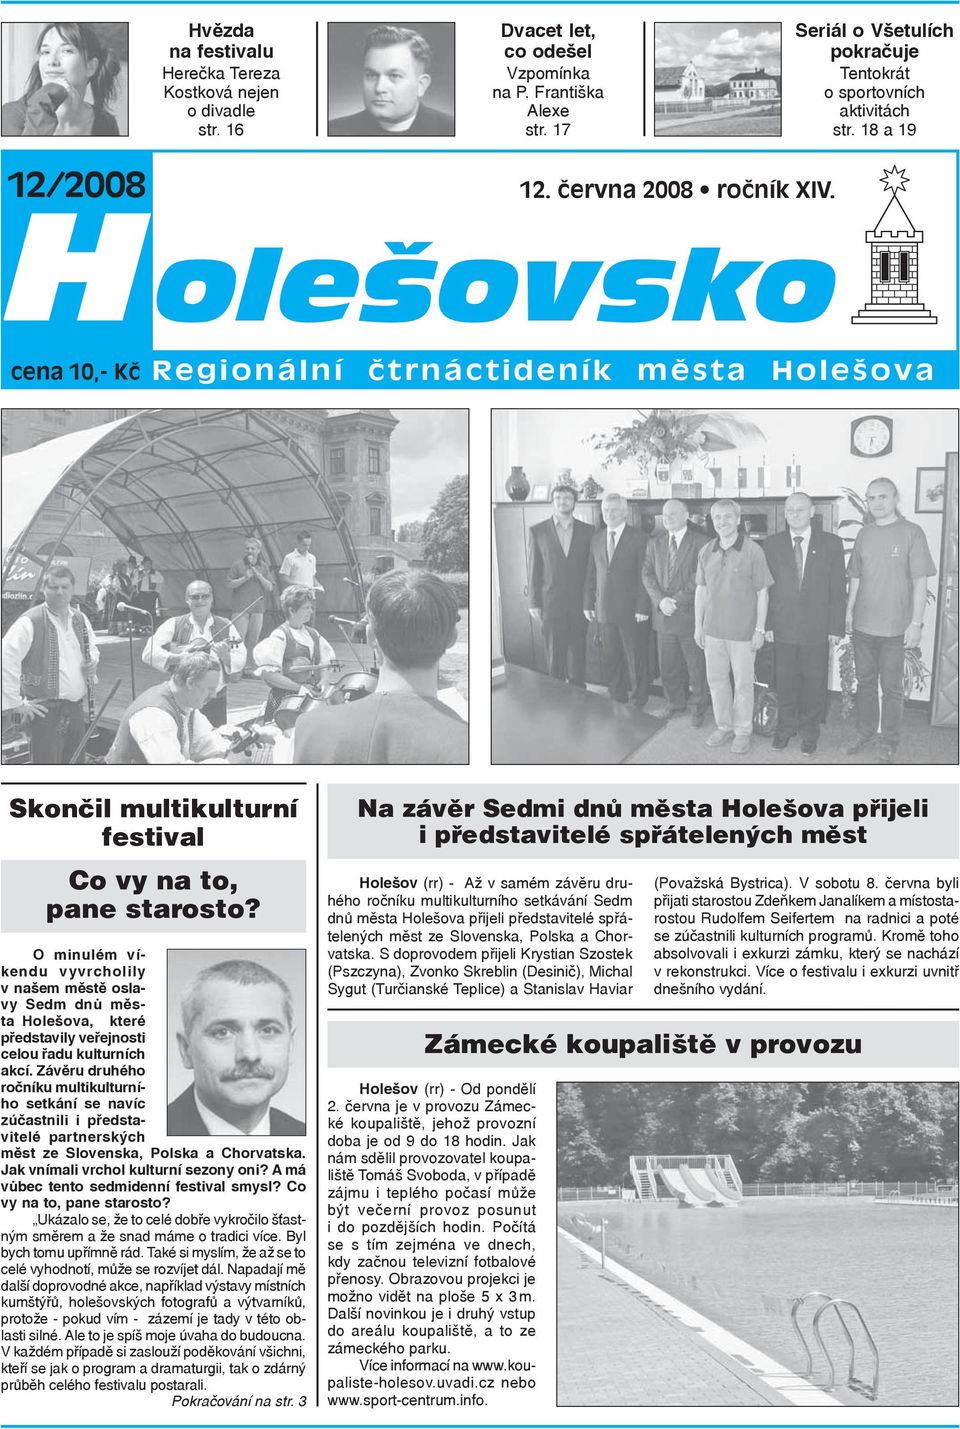 O minulém víkendu vyvrcholily v našem městě oslavy Sedm dnů města Holešova, které představily veřejnosti celou řadu kulturních akcí.